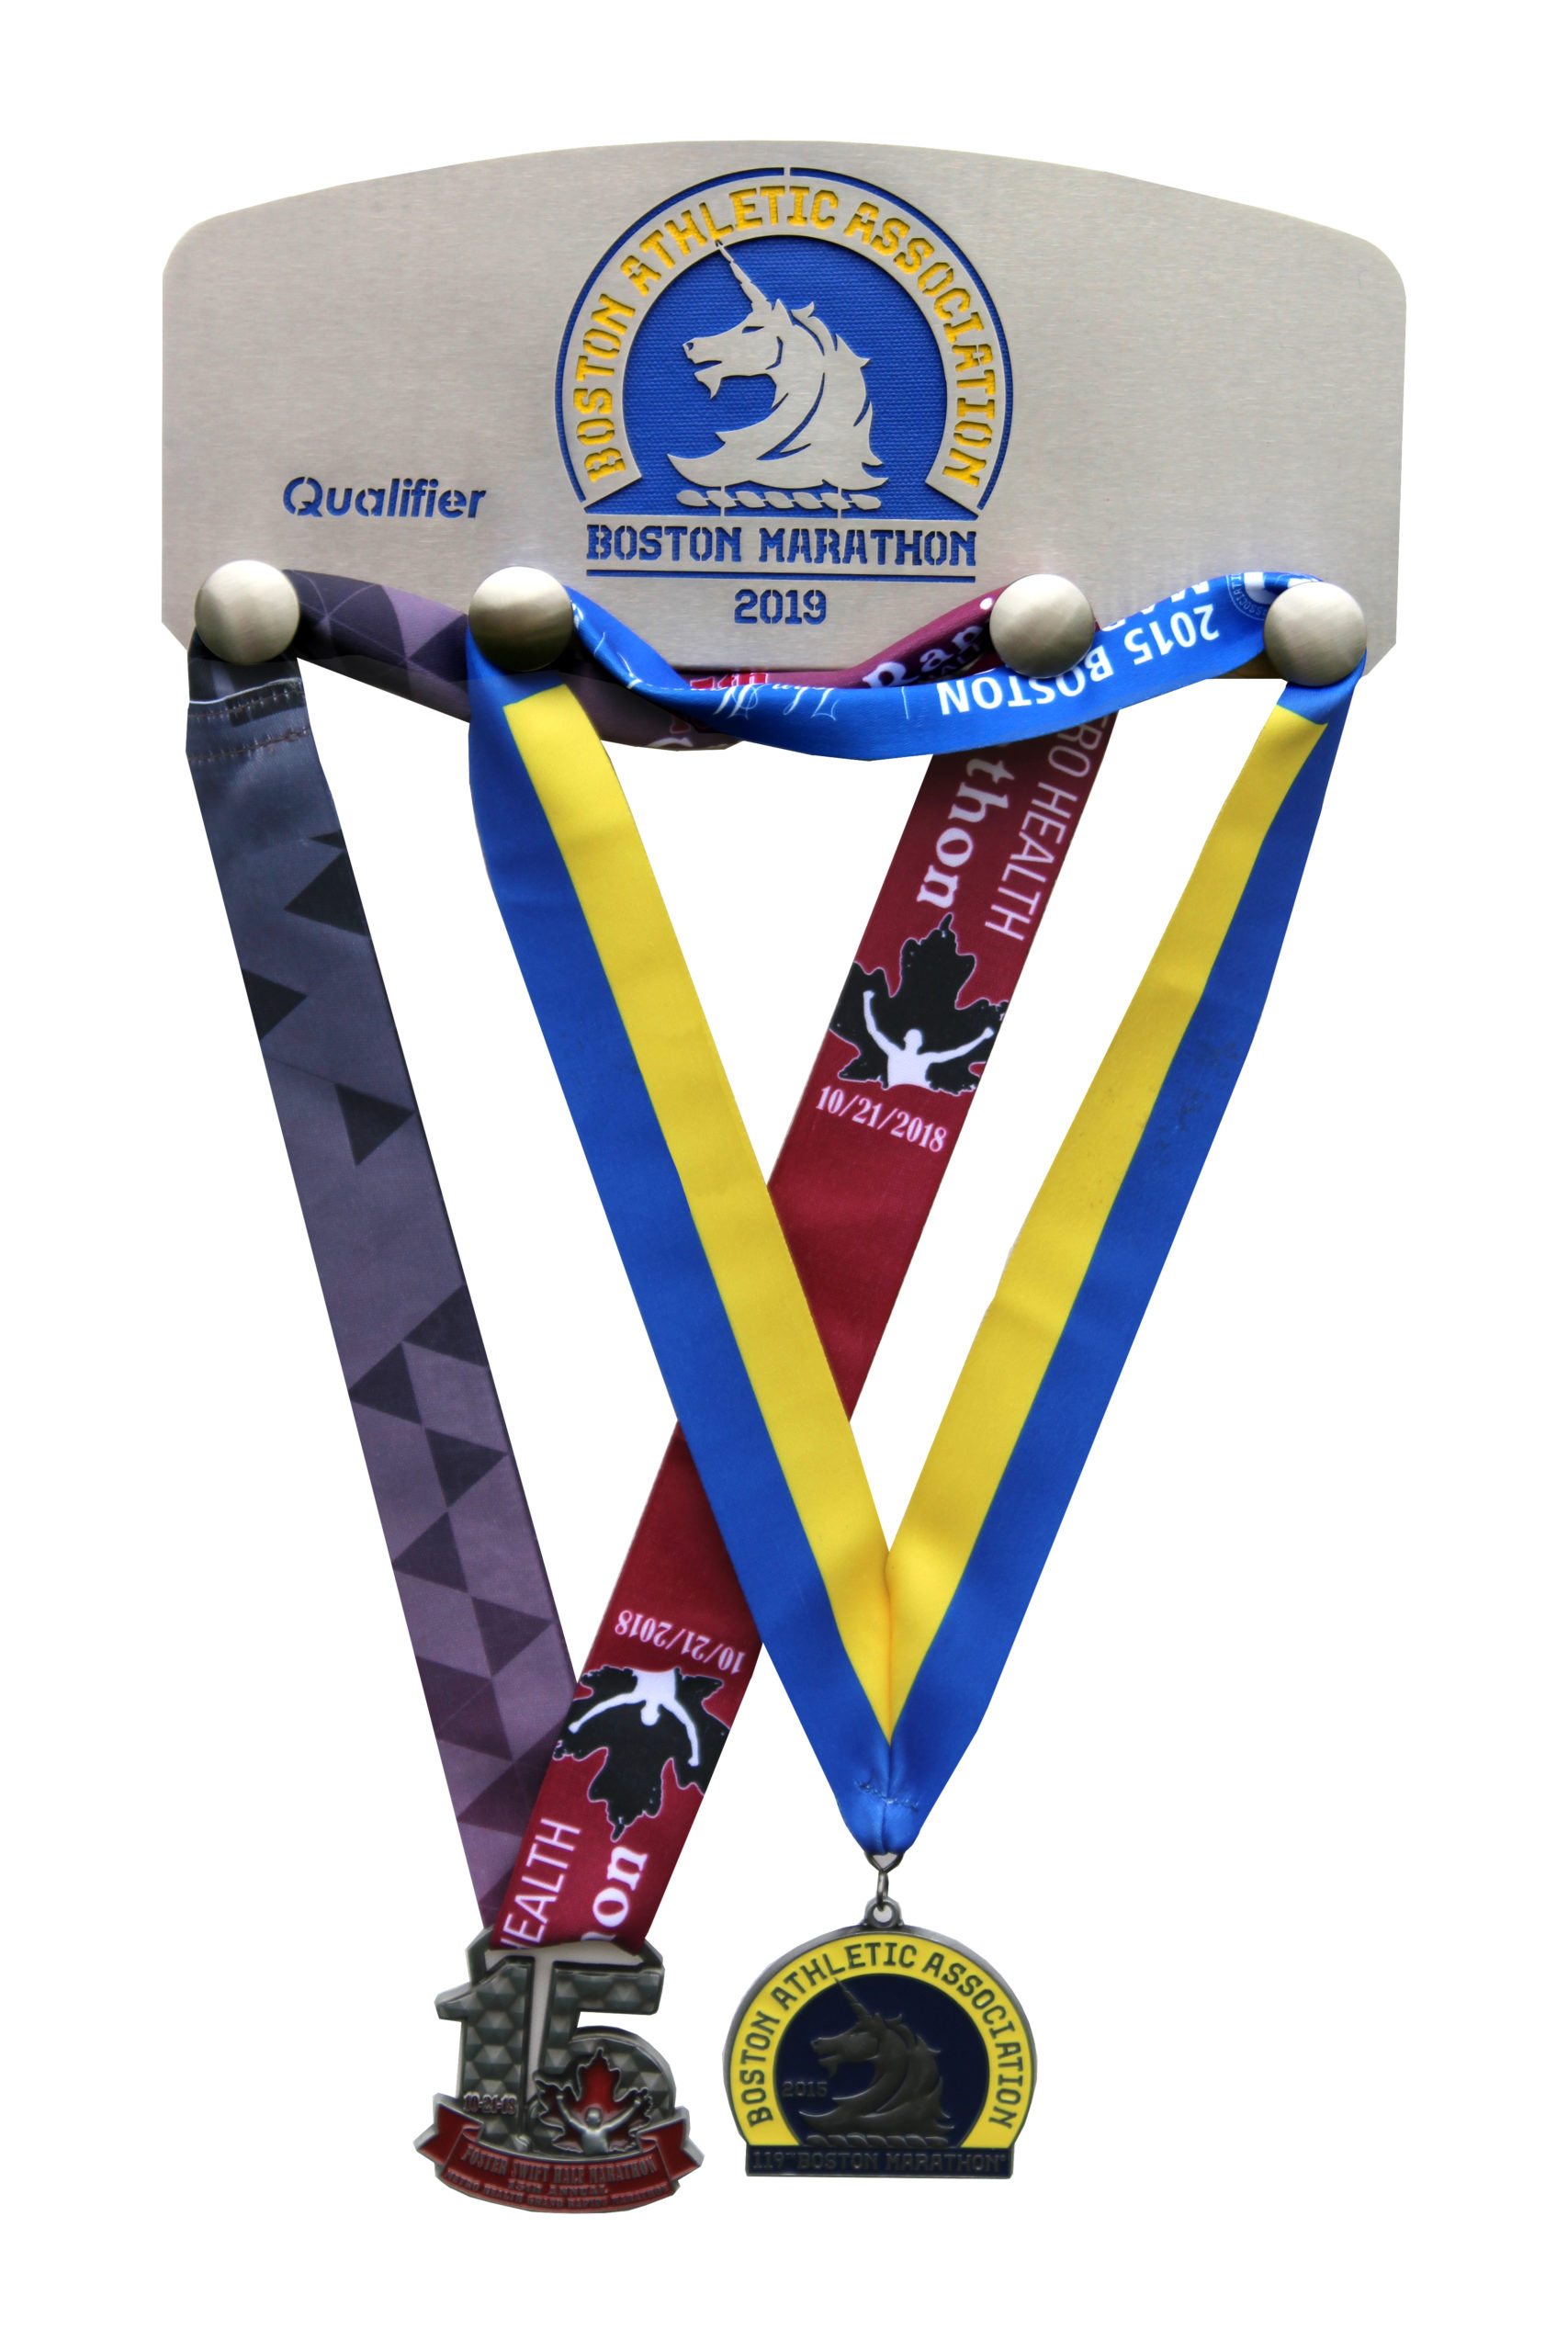 Boston Marathon 2019 with medals